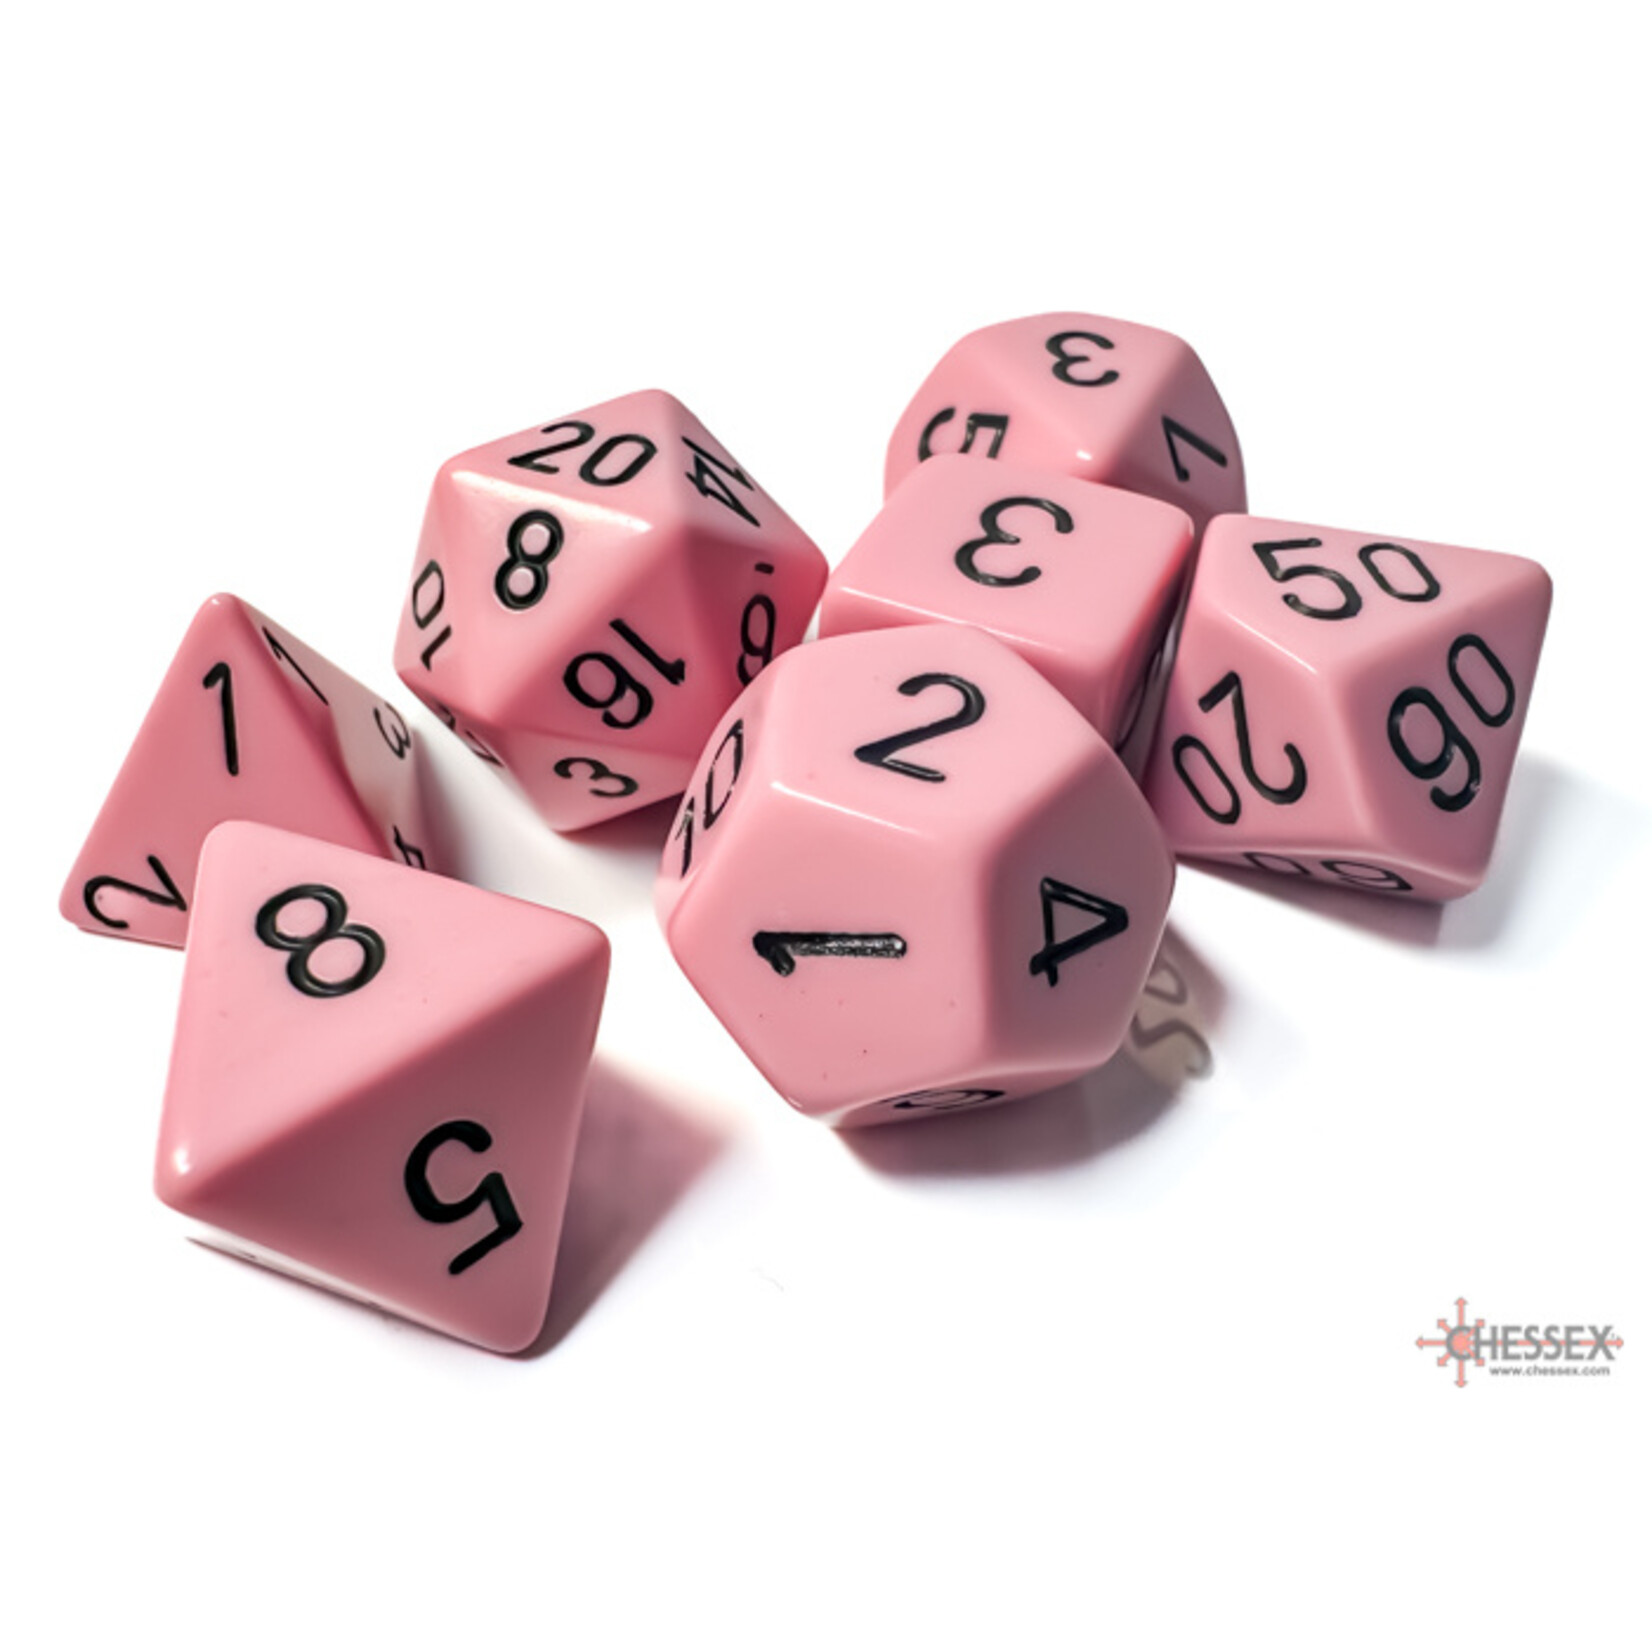 Chessex Chessex 7-Die set Opaque Pastel - Pink/Black